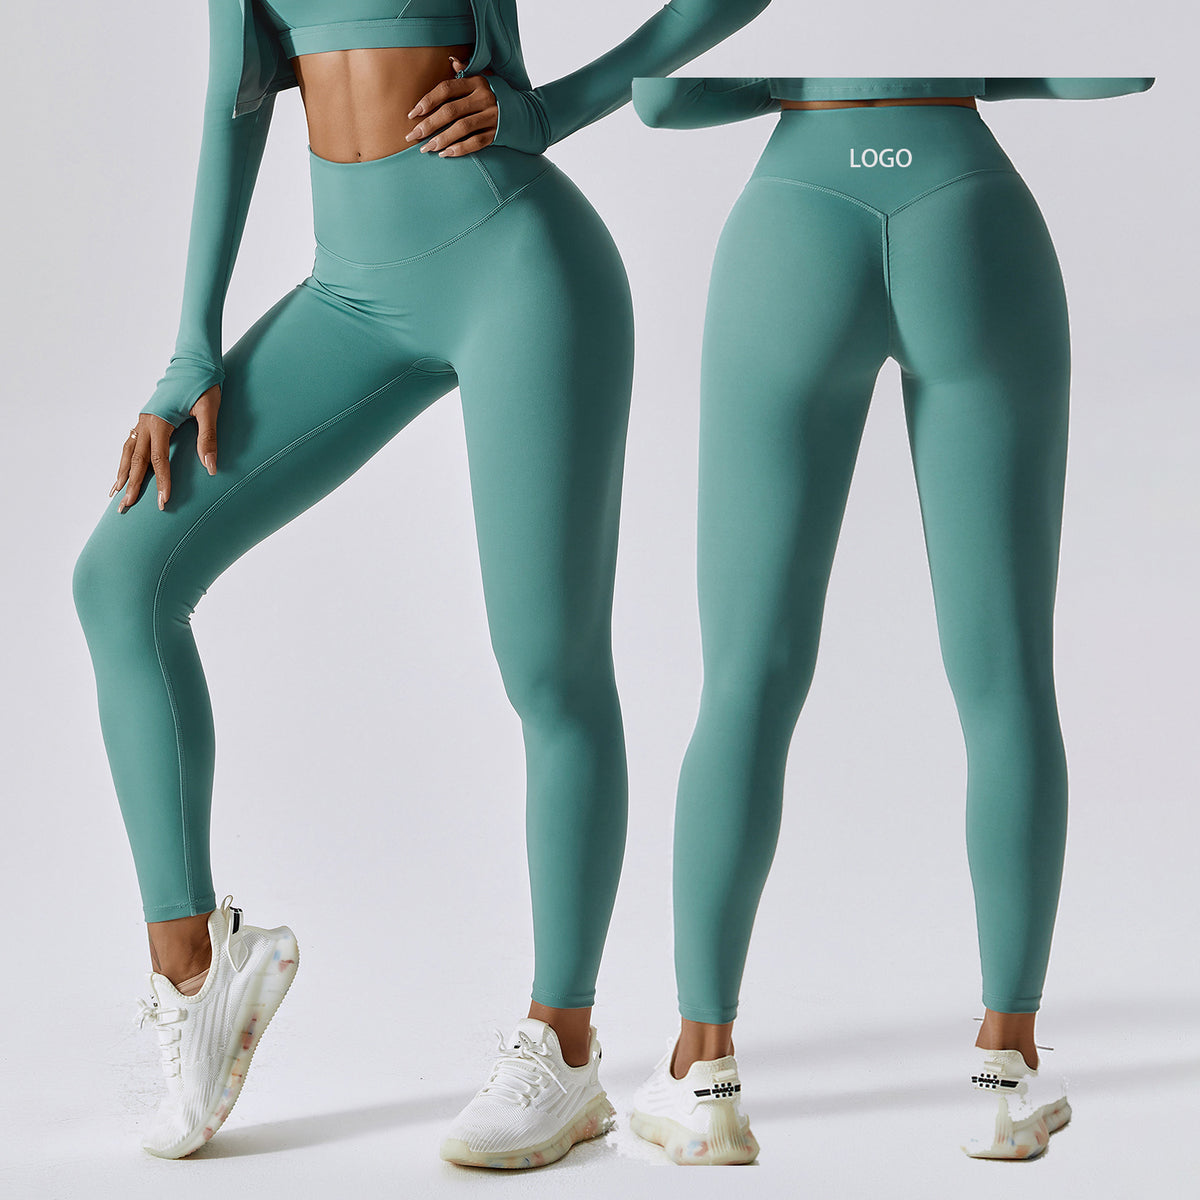 MOLY VIVI Naked Feeling Workout Leggings for Women Running Training Gym  Exercise Yoga Pants